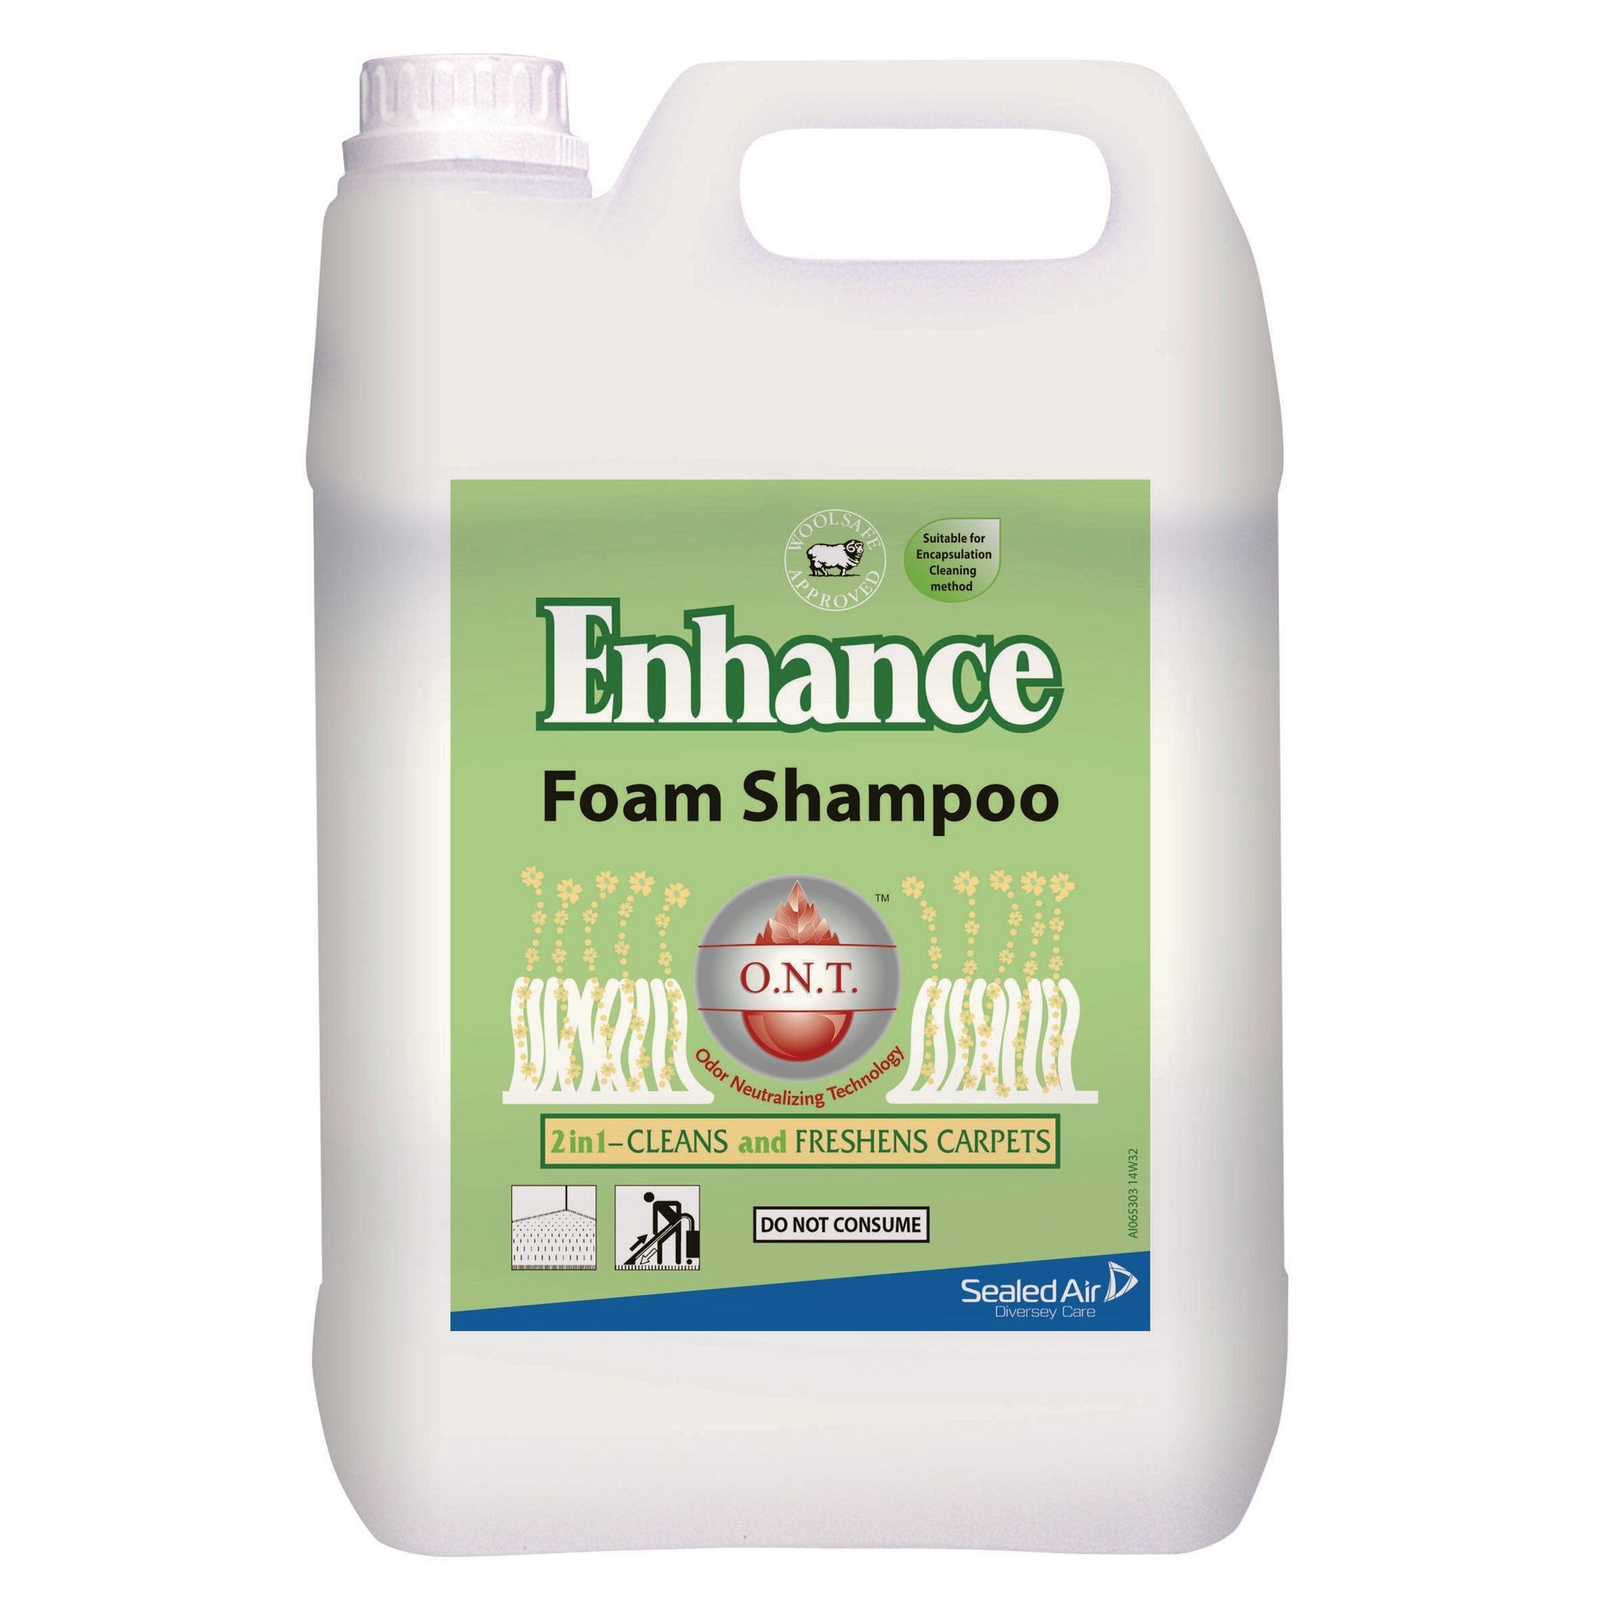 Enhance Foam Shampoo